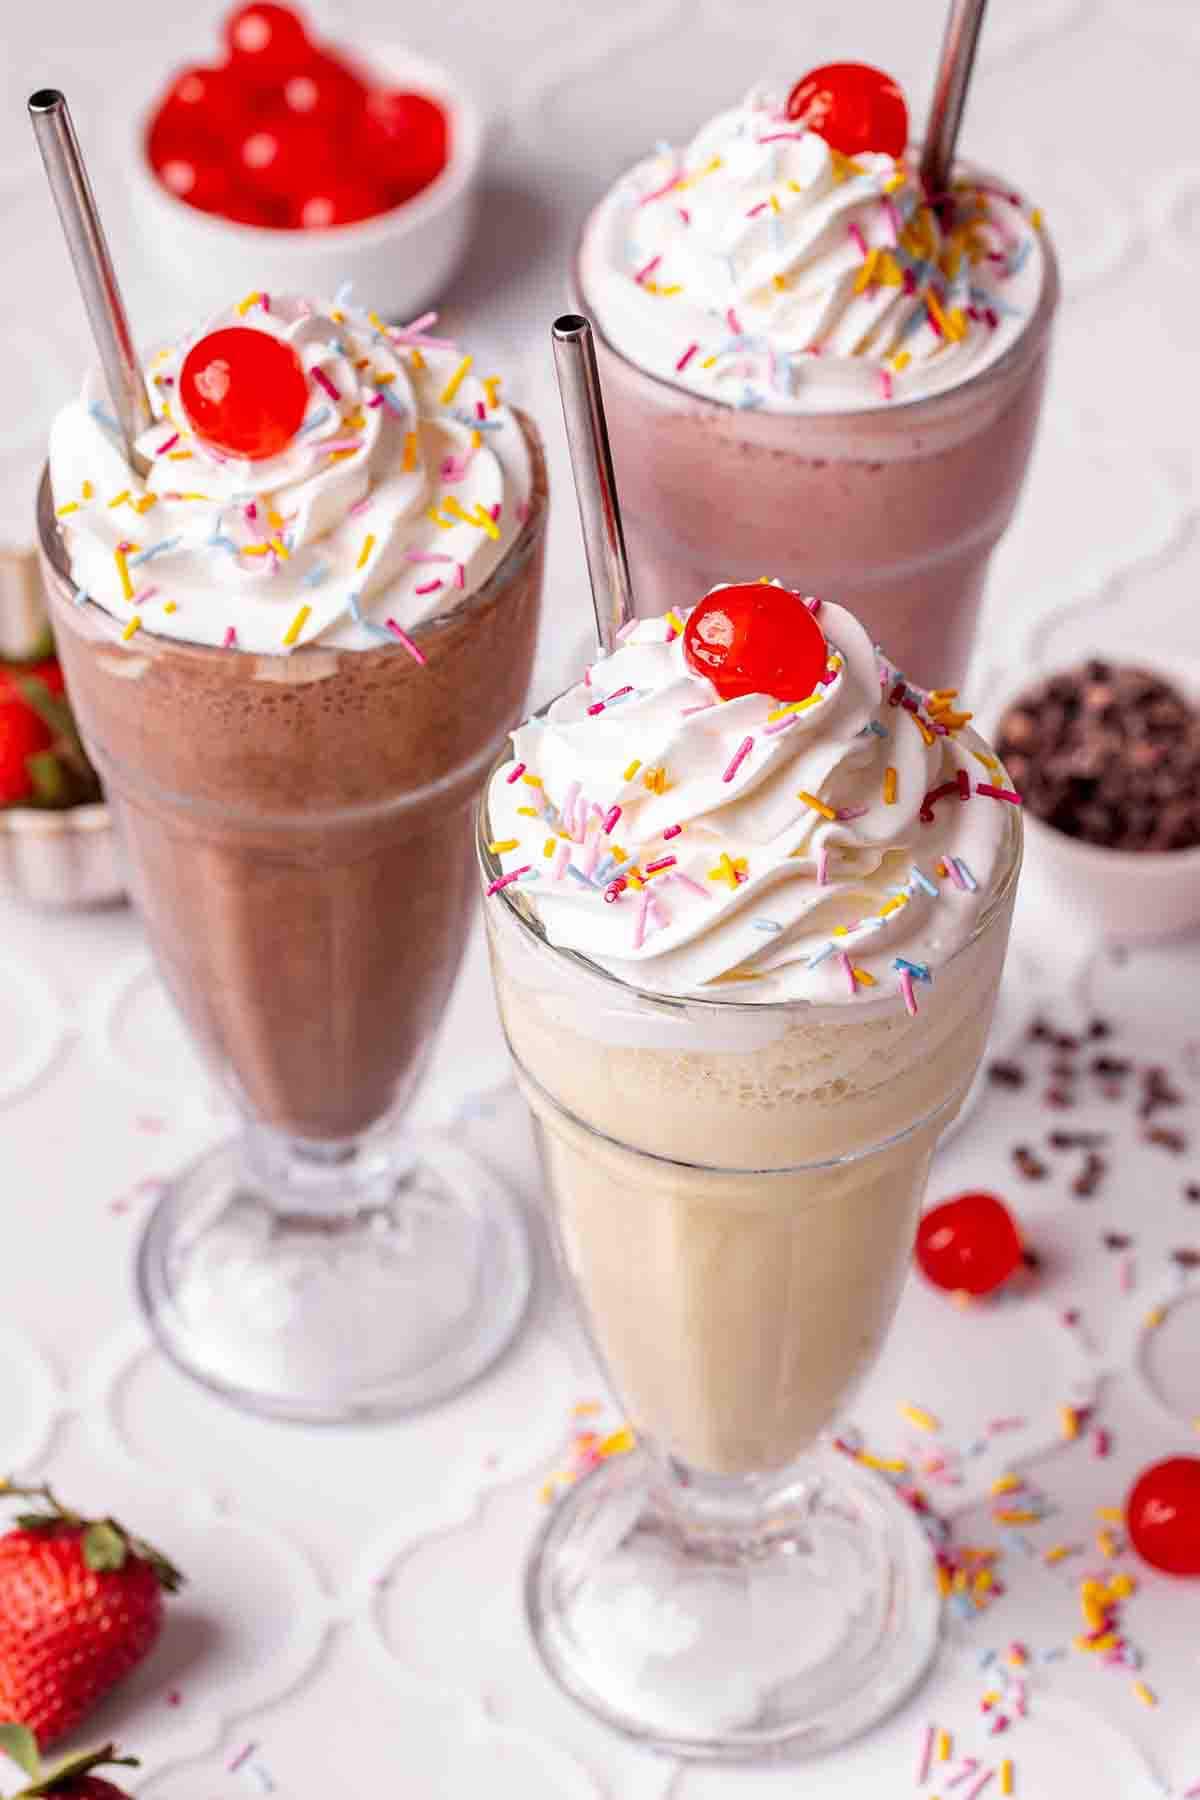 chocolate protein milkshake, vanilla protein shake, and strawberry protein milkshake.